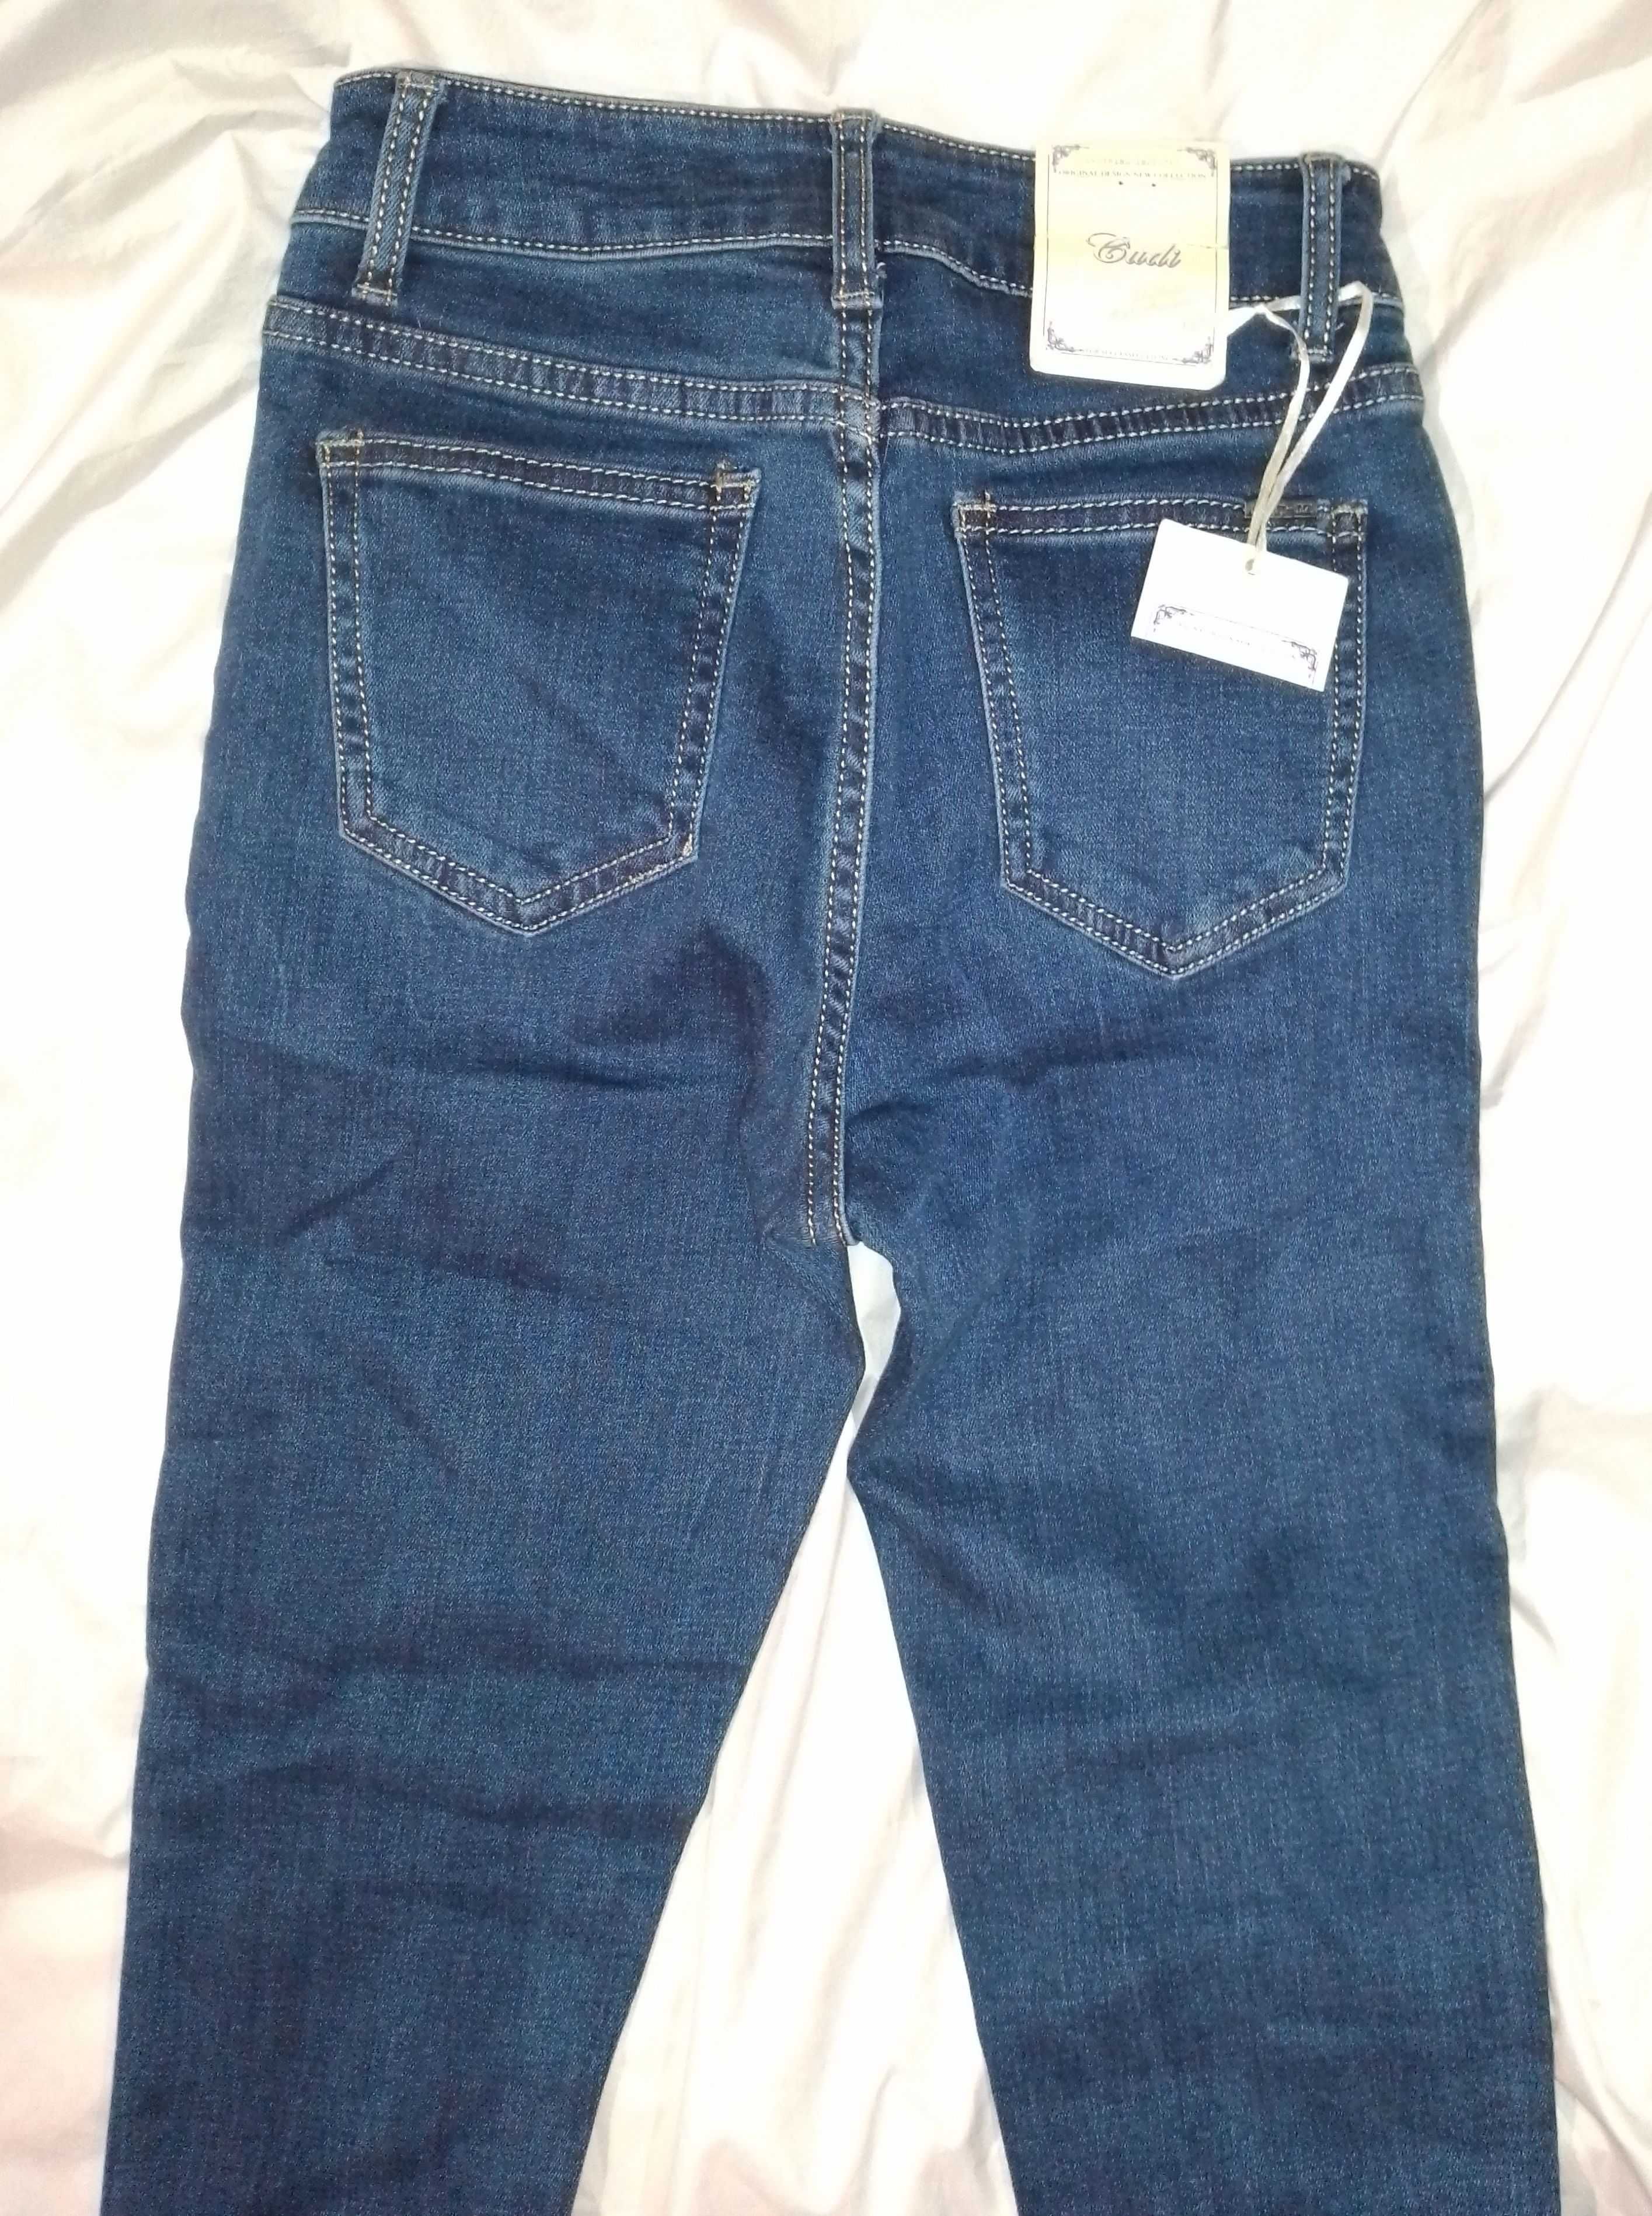 Темные узкие джинсы стрейч на девочку, джинсы узкие размер S/M, джинсы